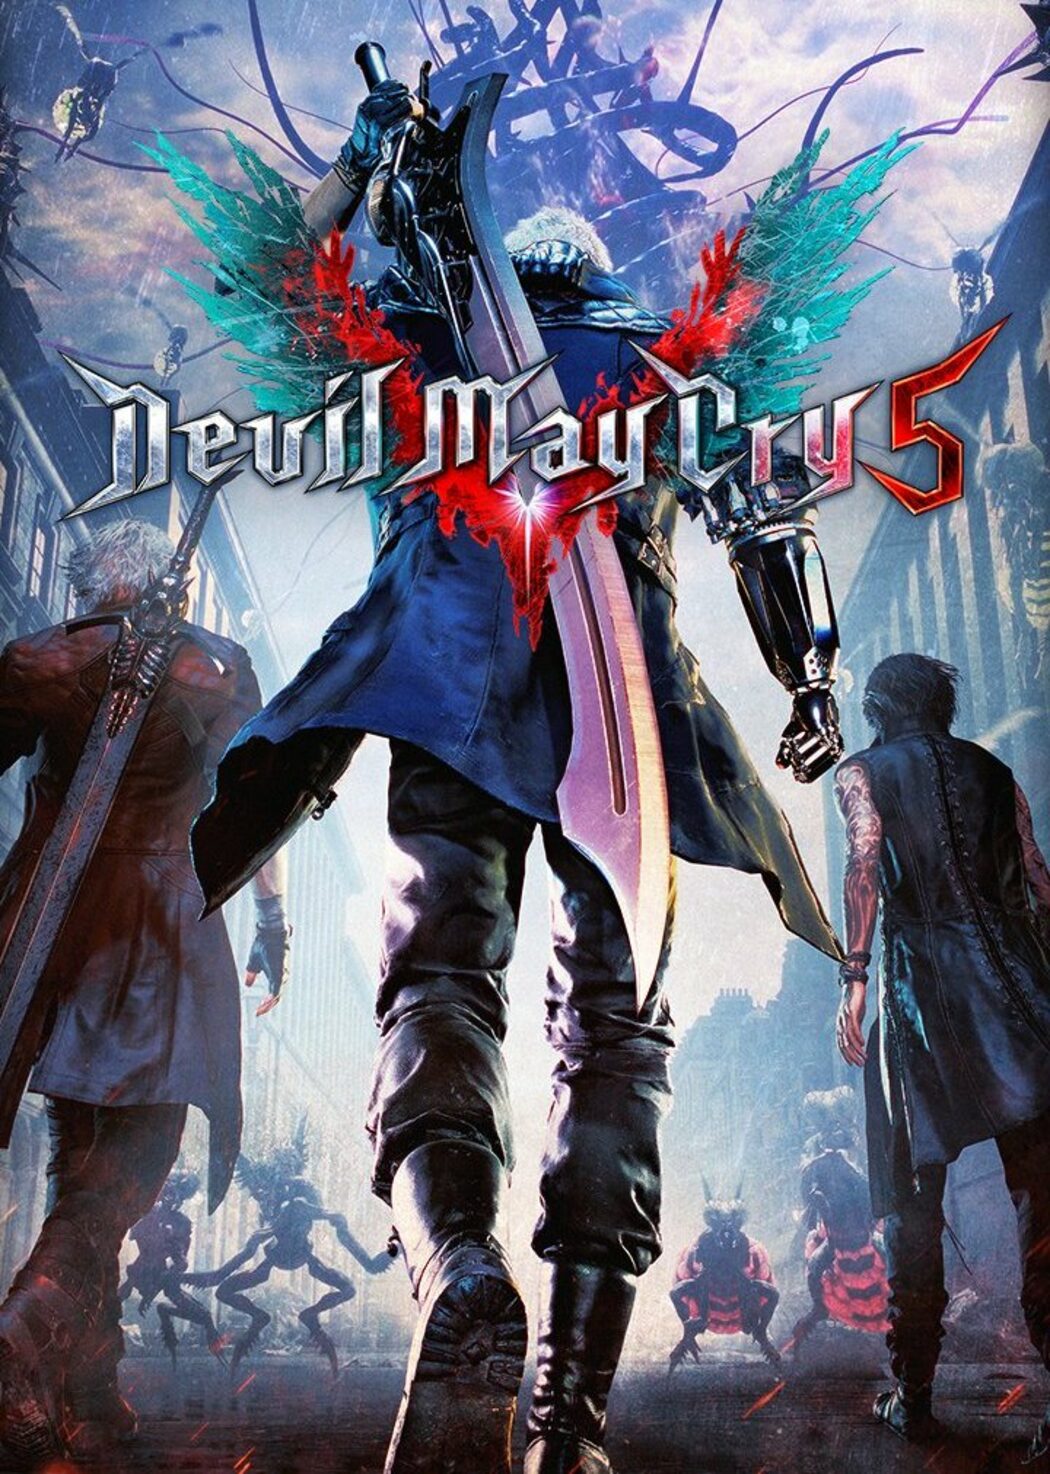 Devil May Cry 5: confira os requisitos mínimos para jogar no PC